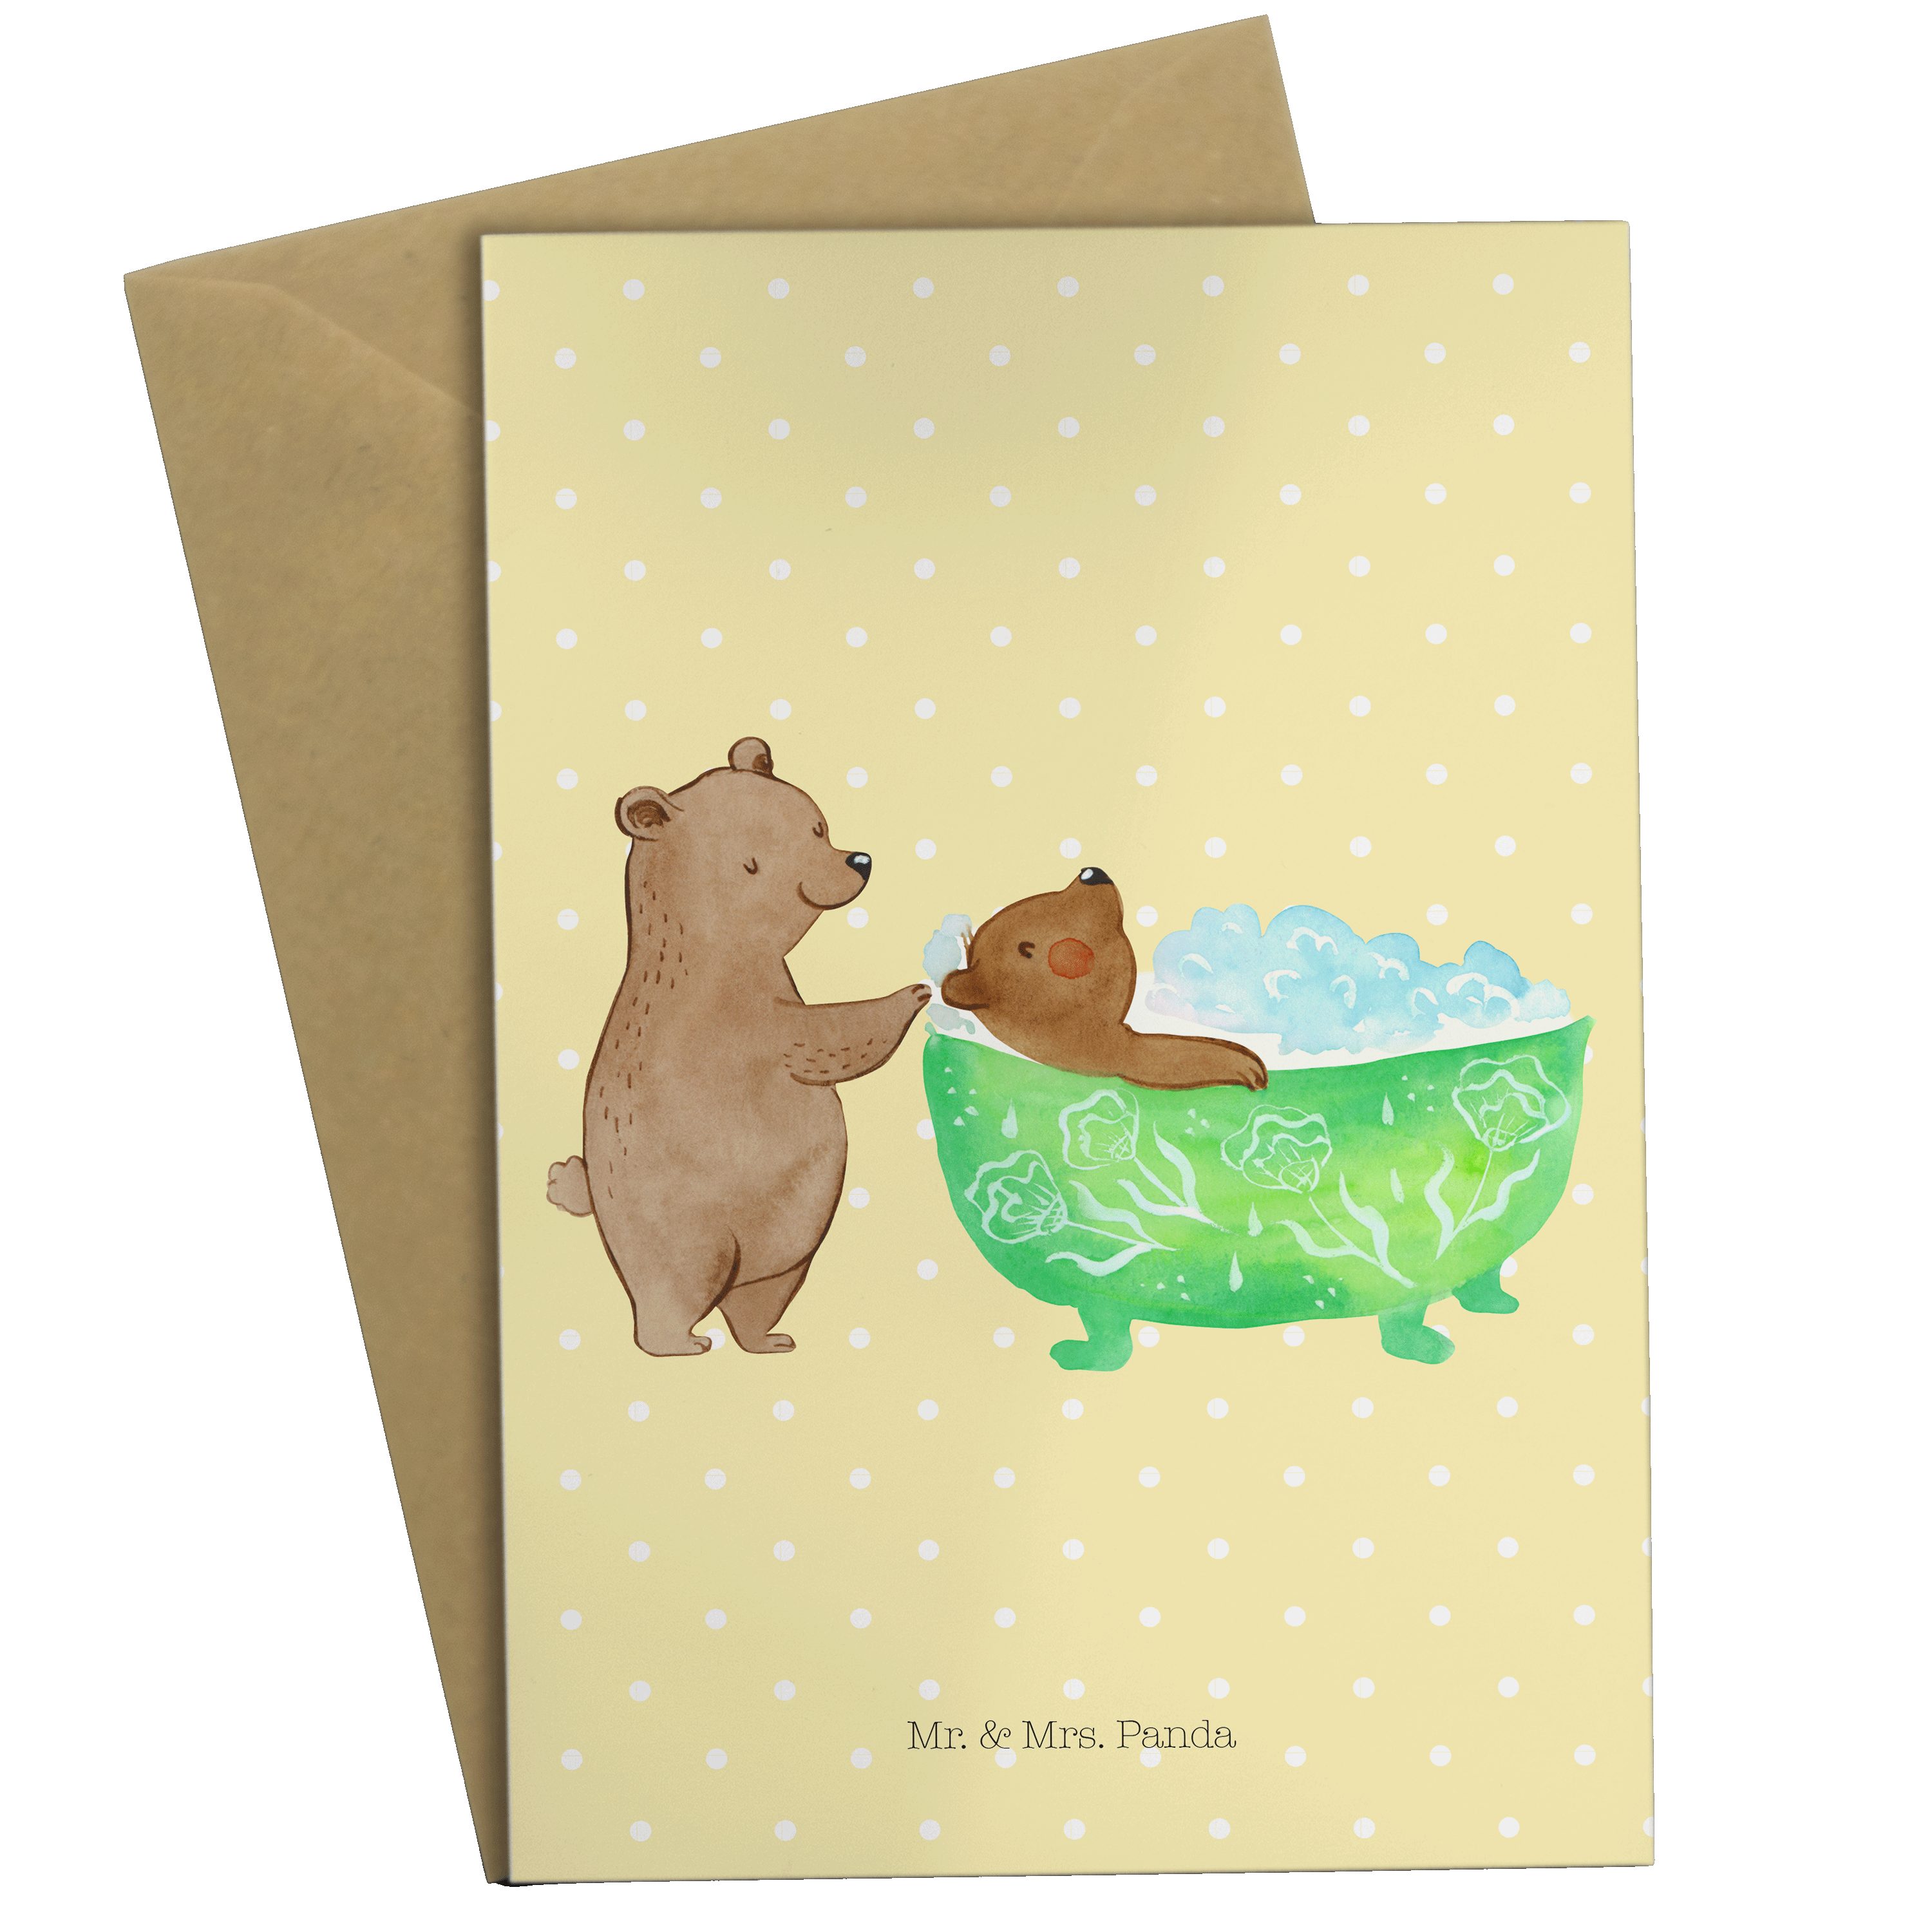 Mr. & Mrs. Panda Grußkarte Oma badet - Gelb Pastell - Geschenk, Liebe, Bären, Einladungskarte, K